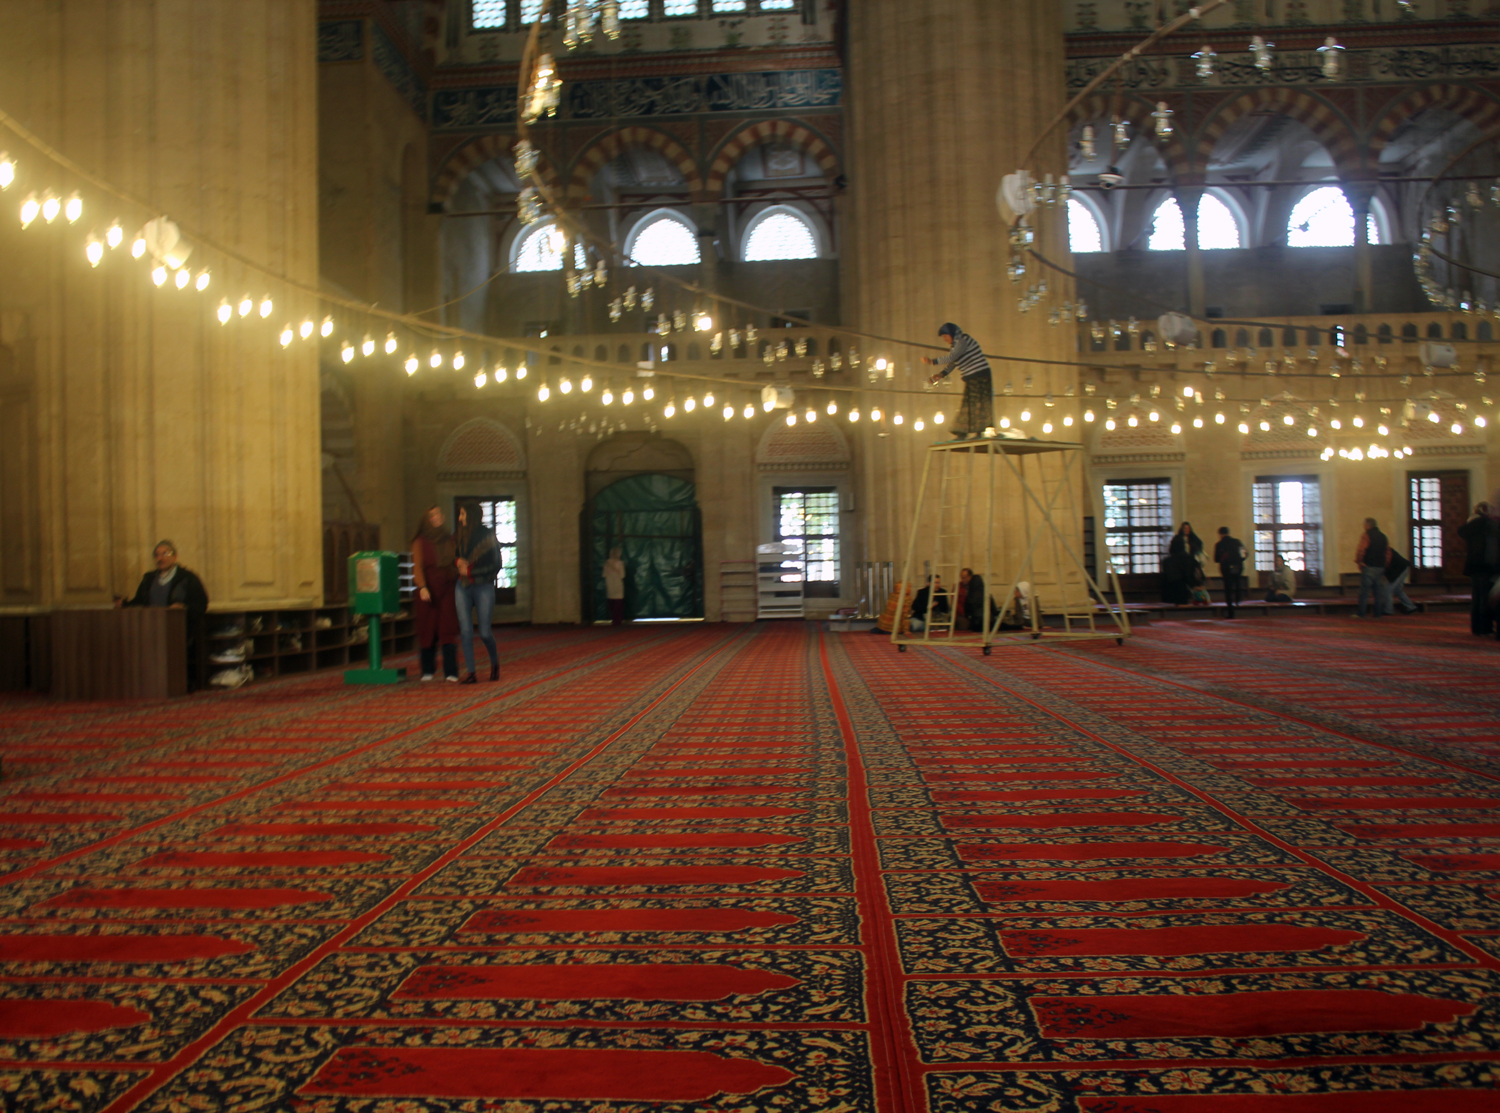 Το φυσικό φως μπαίνει στο τζαμί από 999 παράθυρα. Οι πολυέλαιοι χρησιμοποιούνται ως επιπλέον φωτισμός και κρέμονται χαμηλά για να φωτίζουν όσο το δυνατόν περισσότερο τον τεράστιο χώρο.